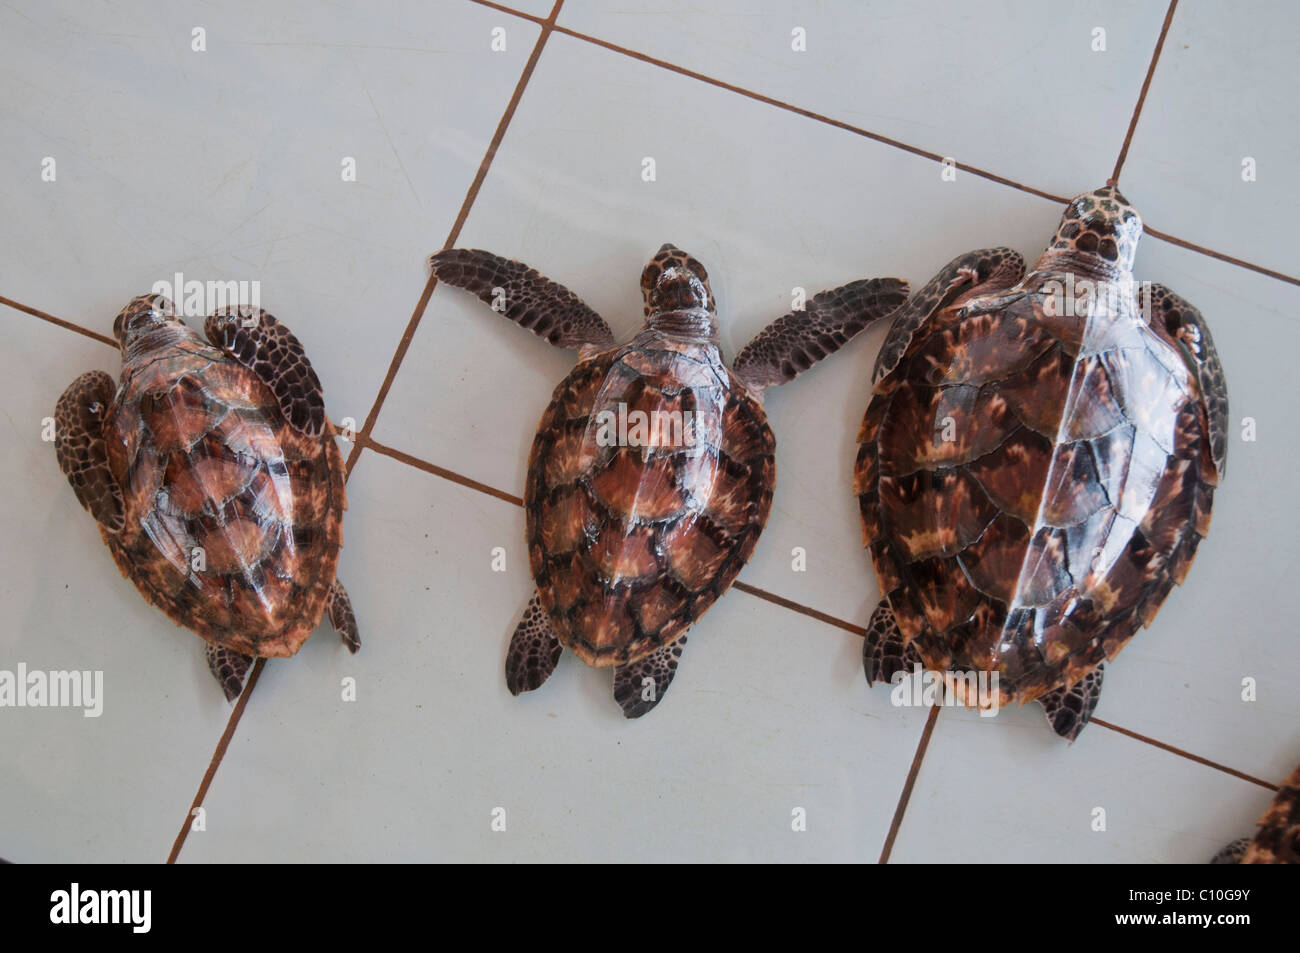 Bébé tortues caouannes dans un sanctuaire des Tortues sur Gili Trawangan en Indonésie Banque D'Images